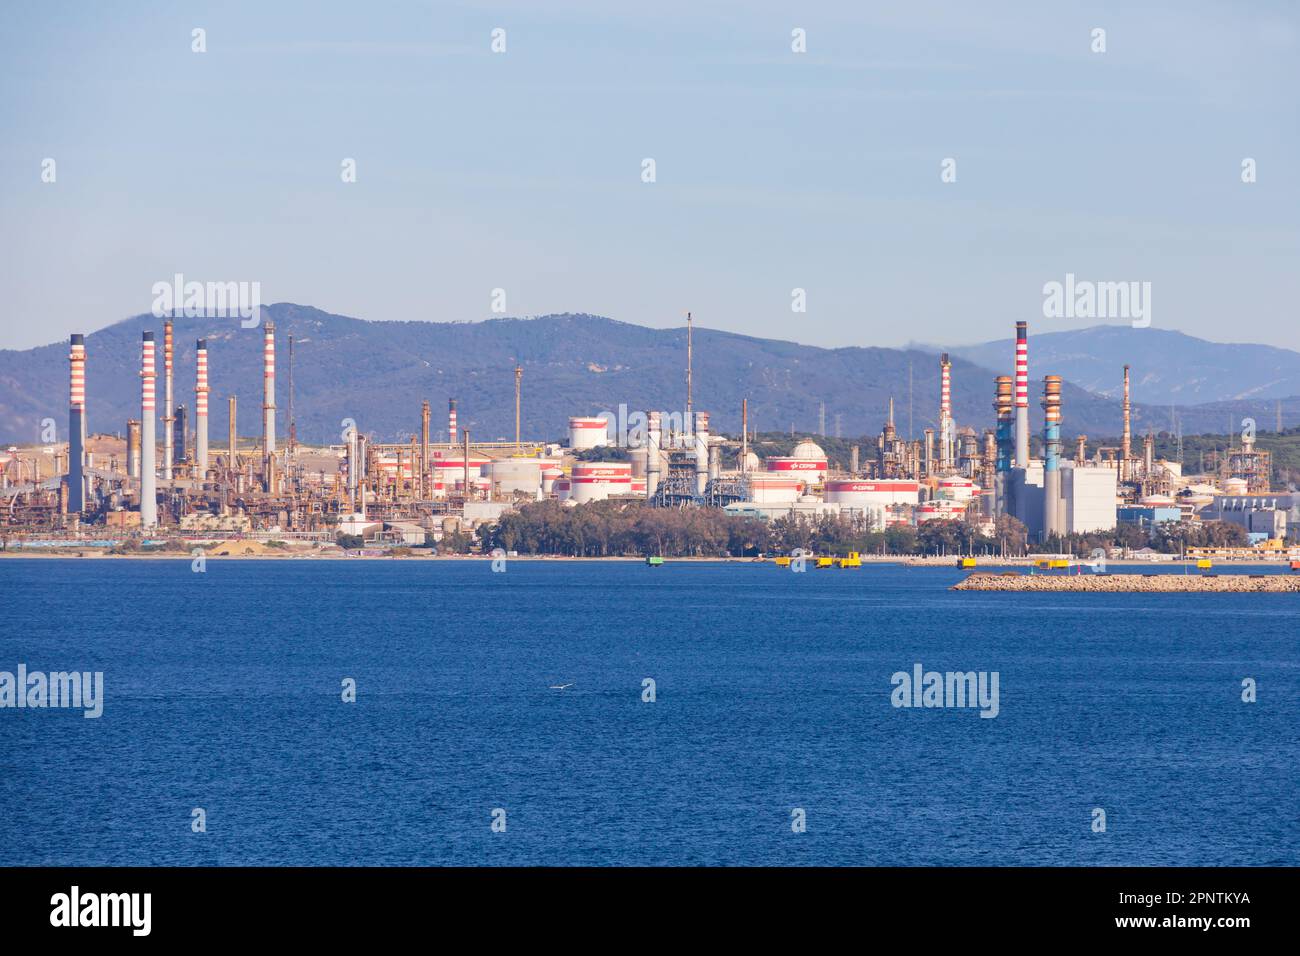 Die Refieria San Roque, petrochemische Raffinerie in der Bucht von Algeciras, Spanien. Vom Britischen Überseegebiet Gibraltar aus gesehen, dem Felsen von Gibr Stockfoto